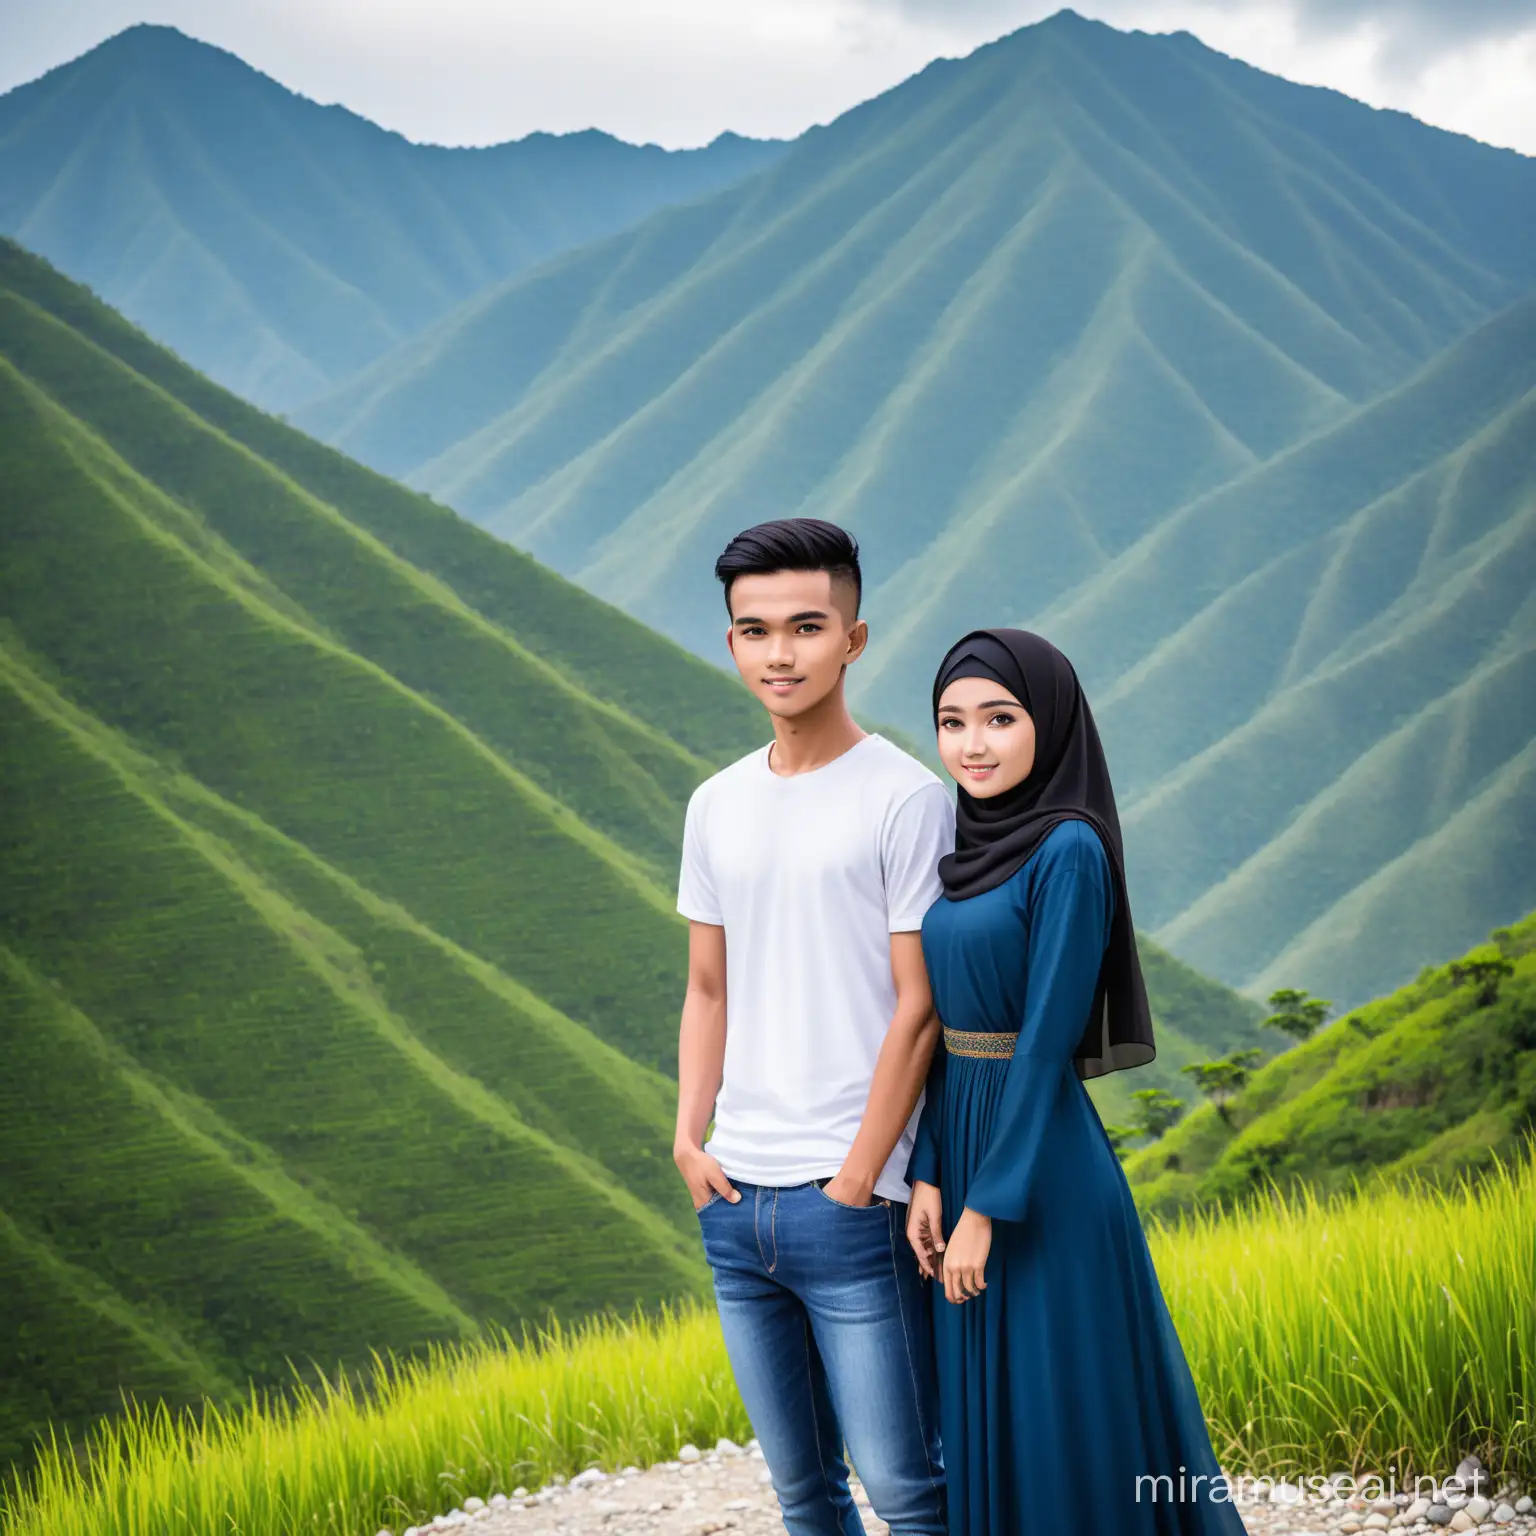 Foto pria indonesia umur 20 tahun kaos putih,celana jeans)sedang berdiri  bersama wanita cantik umur 20 tahun (baju muslim panjang warna biru tua) pose ke kamera,lokasi sebuah pegunungan